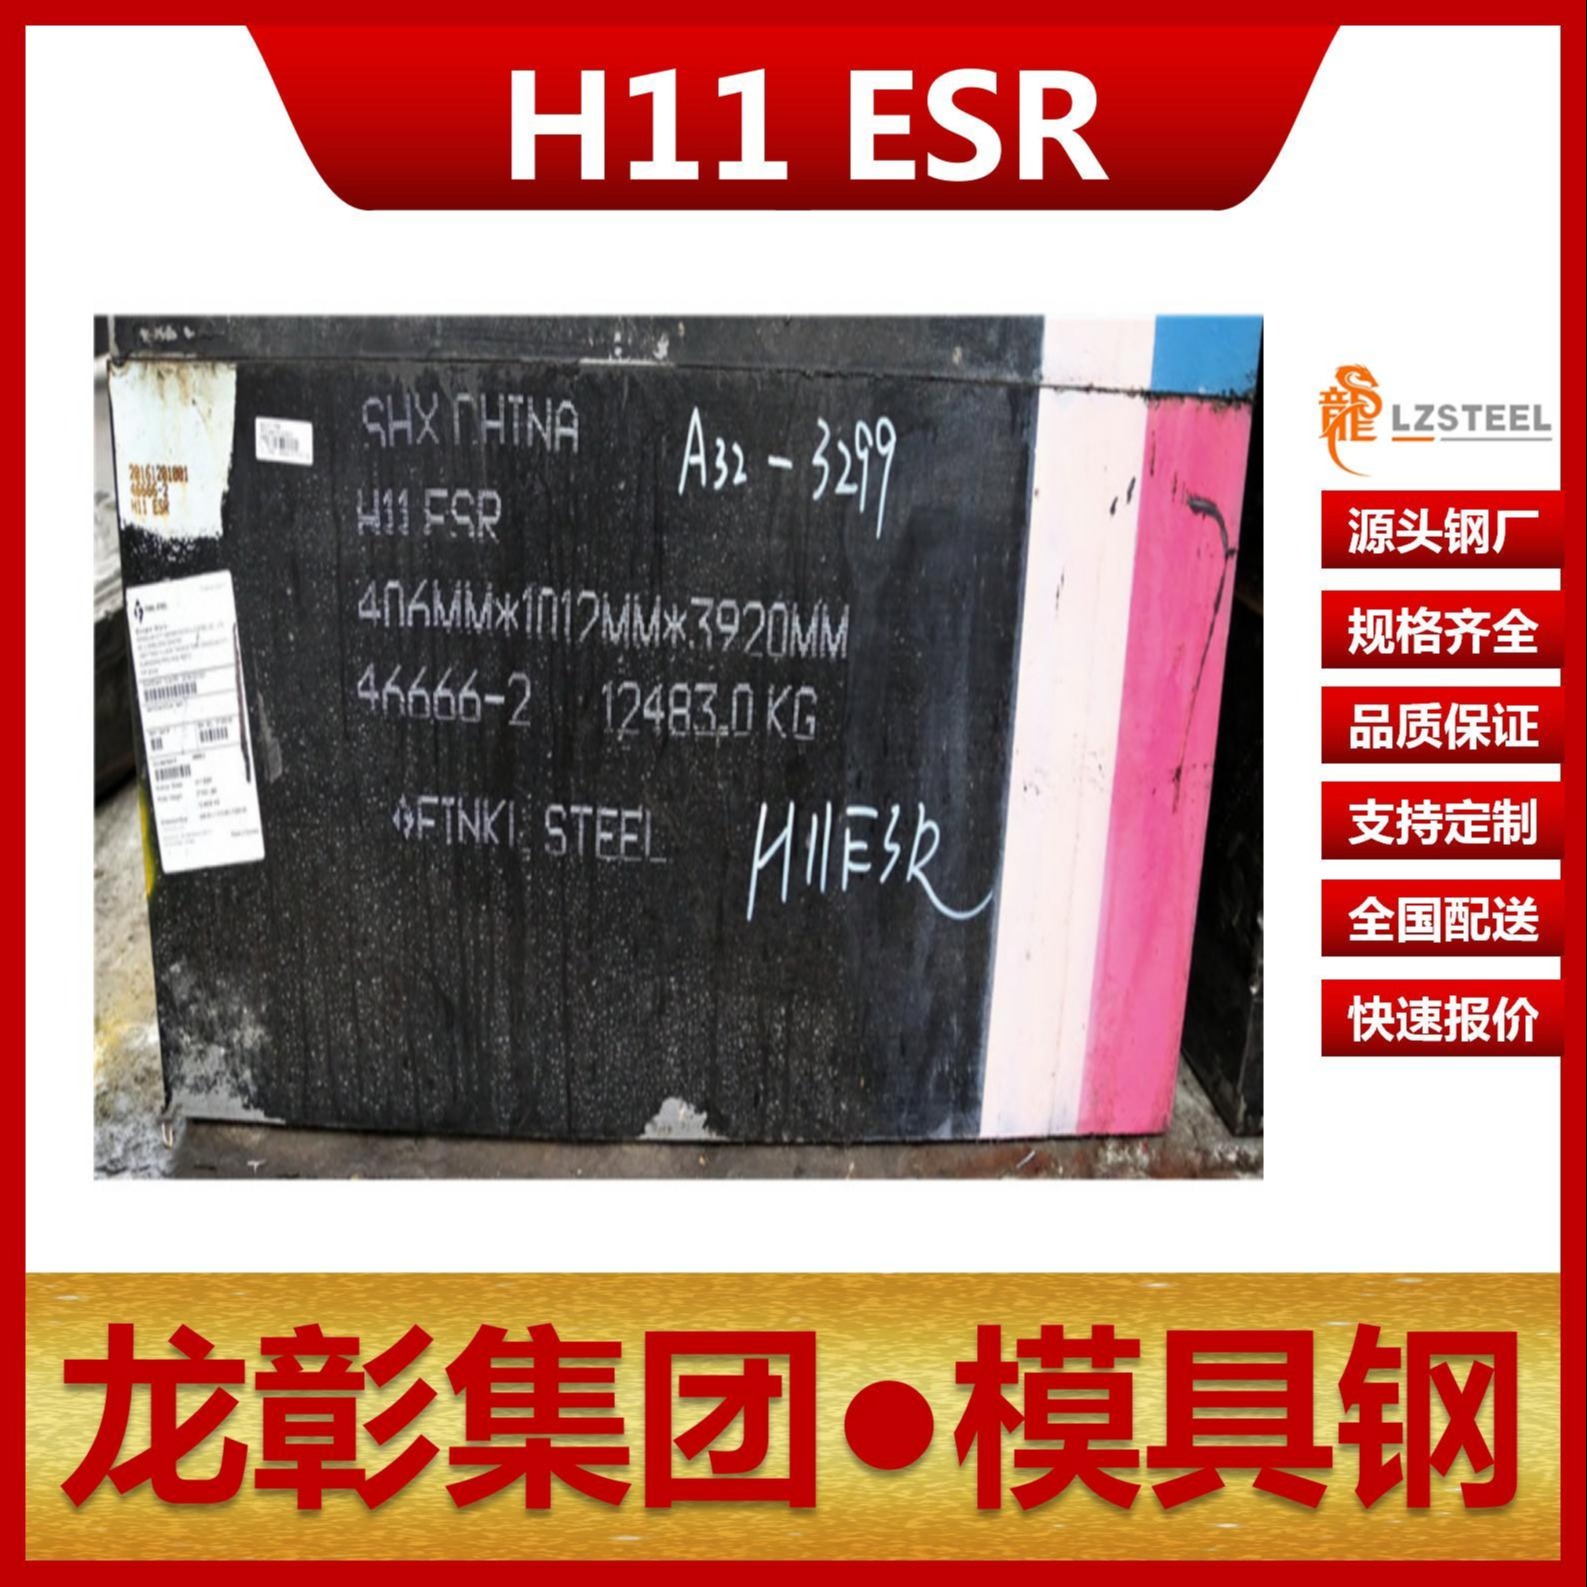 芬可乐H11 ESR模具钢现货批零 进口H11 ESR扁钢圆棒热作模具钢龙彰集团